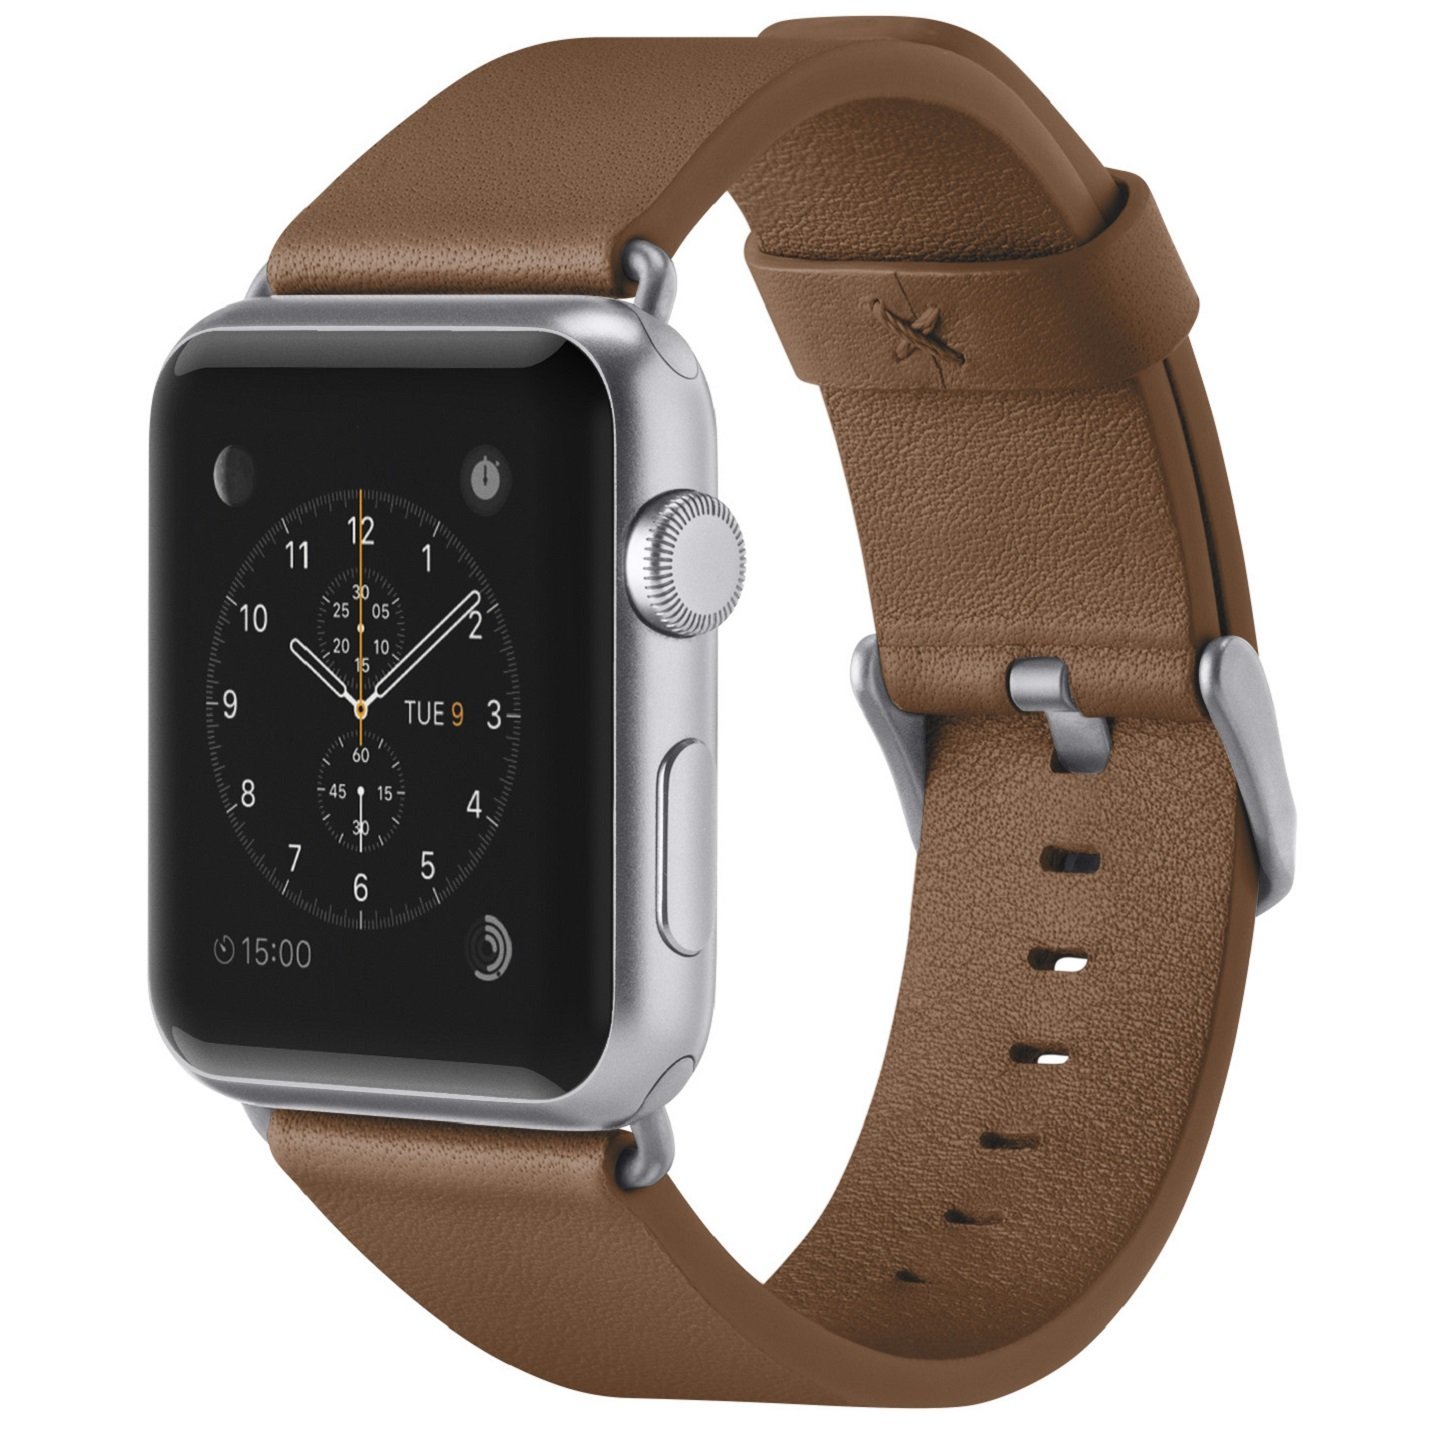 Belkin F8W730BTC00 correa apple smartwatch marrón